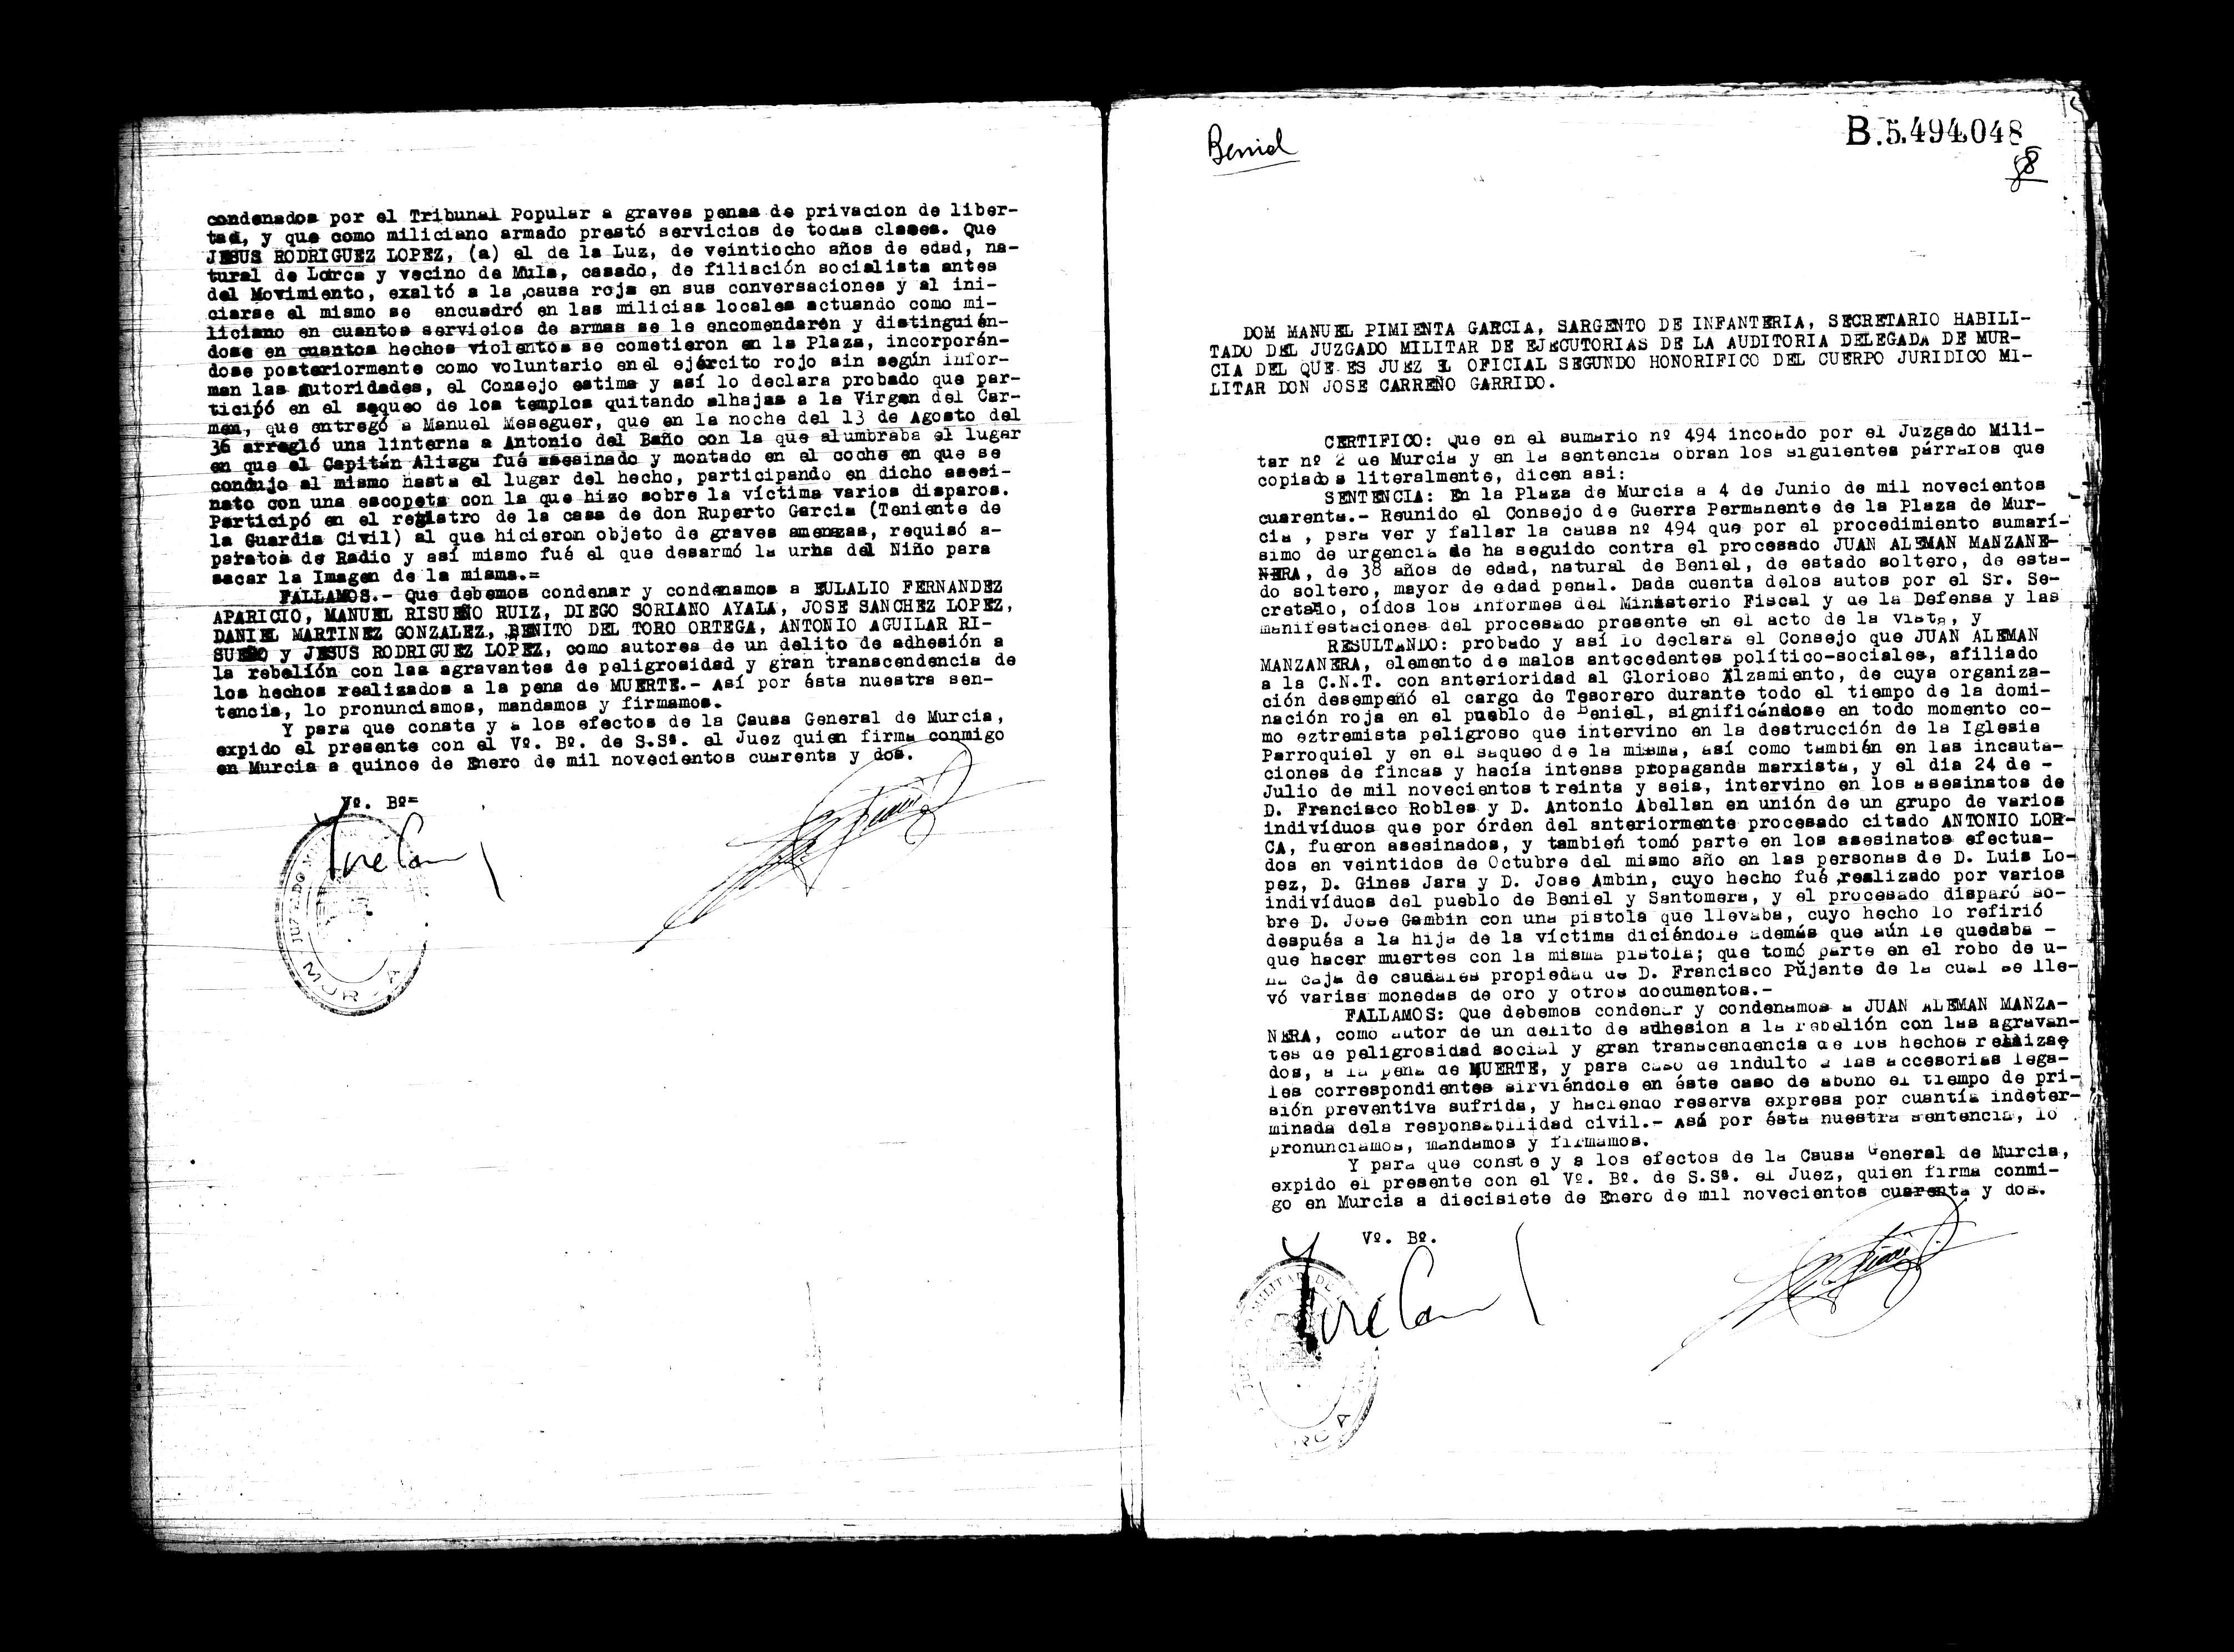 Certificado de la sentencia pronunciada contra Juan Alemán Manzanera, causa 494, el 4 de junio de 1940.